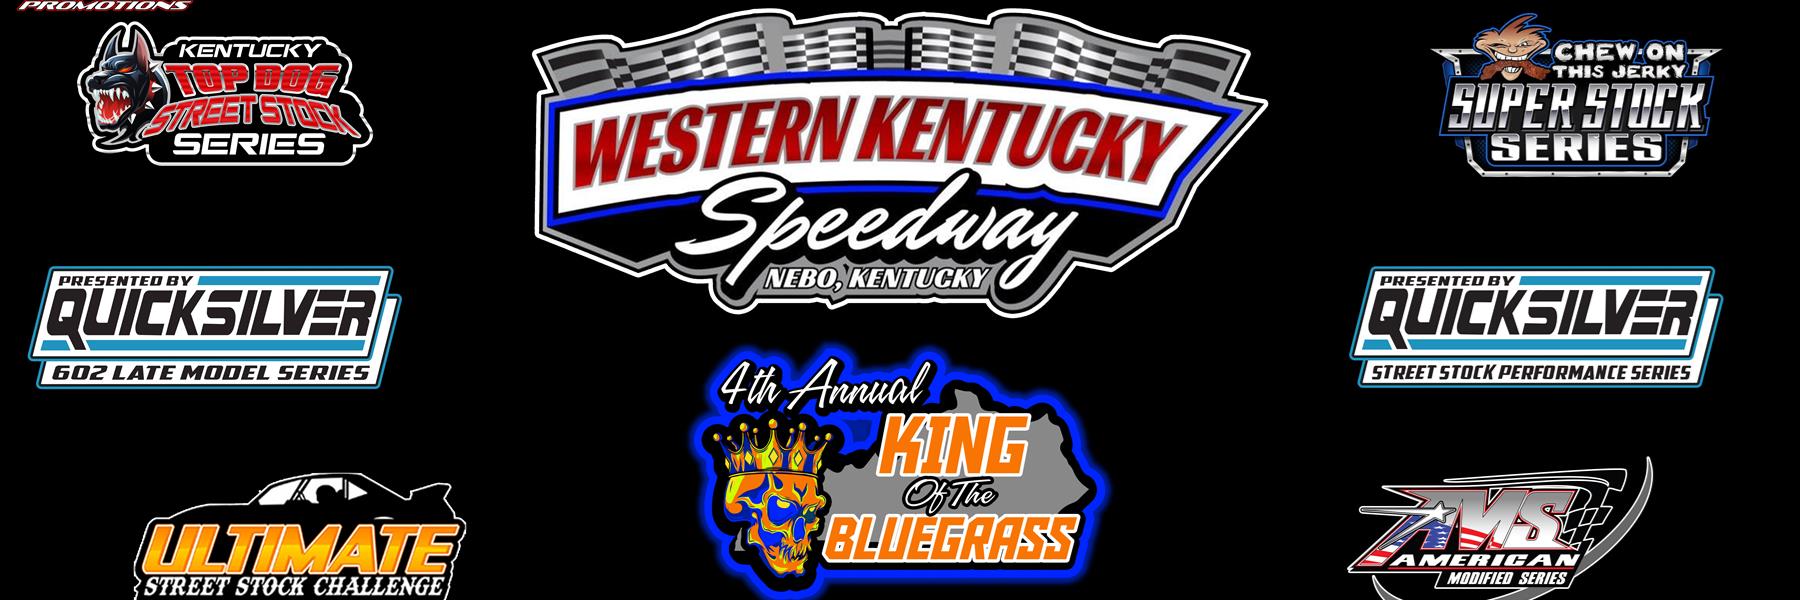 5/14/2022 - Western Kentucky Speedway